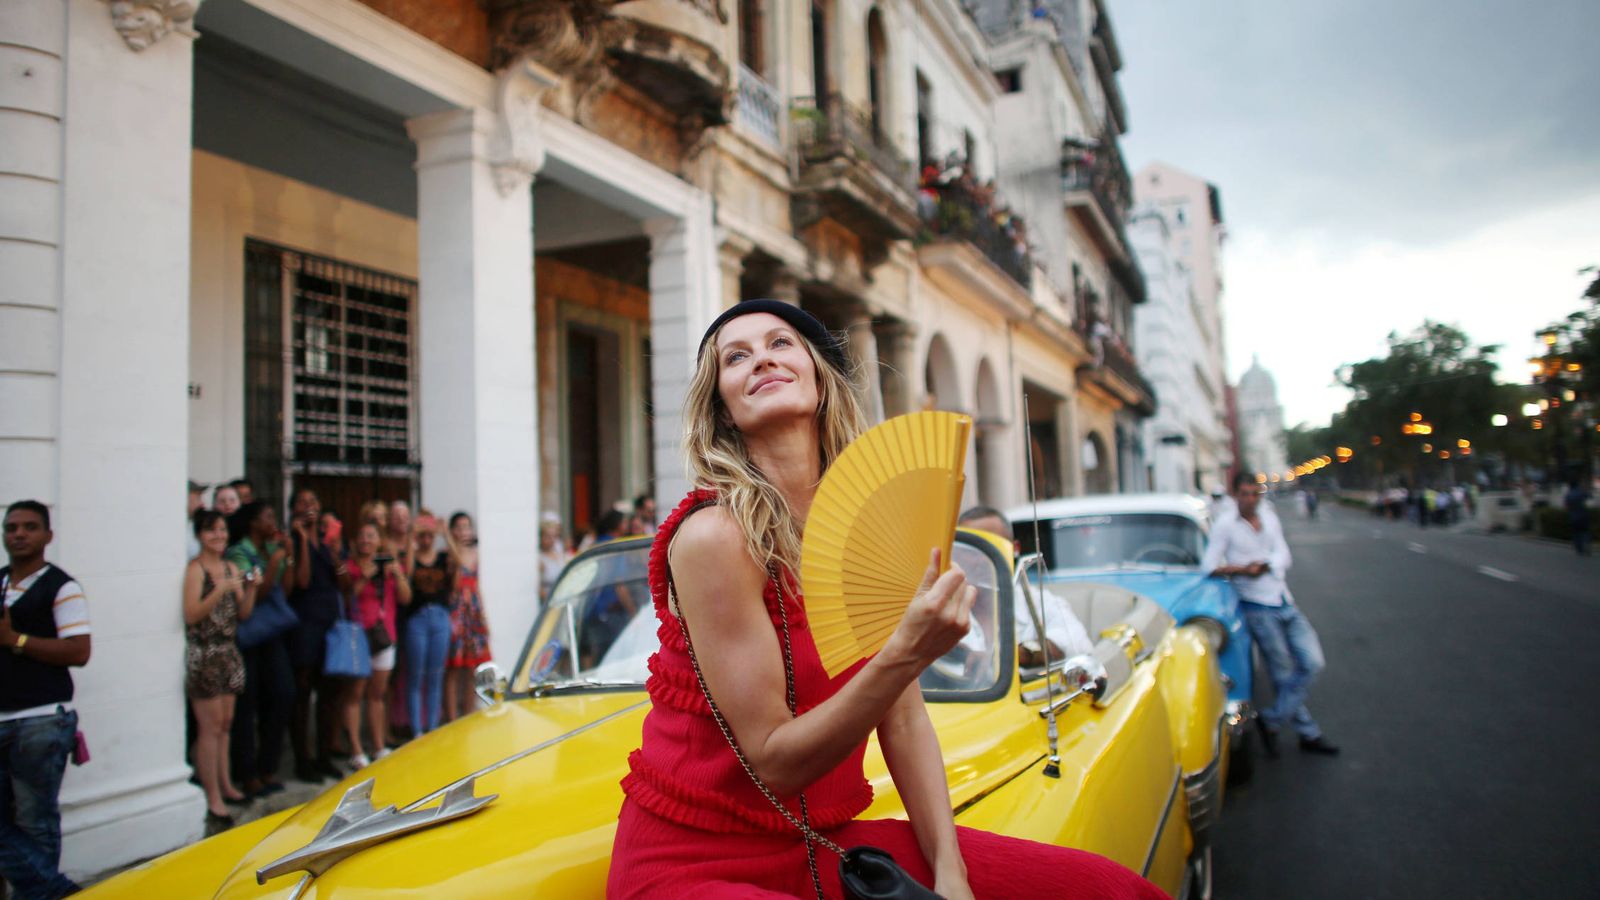 Foto: La modelo Gisele Bundchen posa en el Paseo del Prado, en La Habana, antes de un evento de moda del diseñador Karl Lagerfeld. (Reuters)